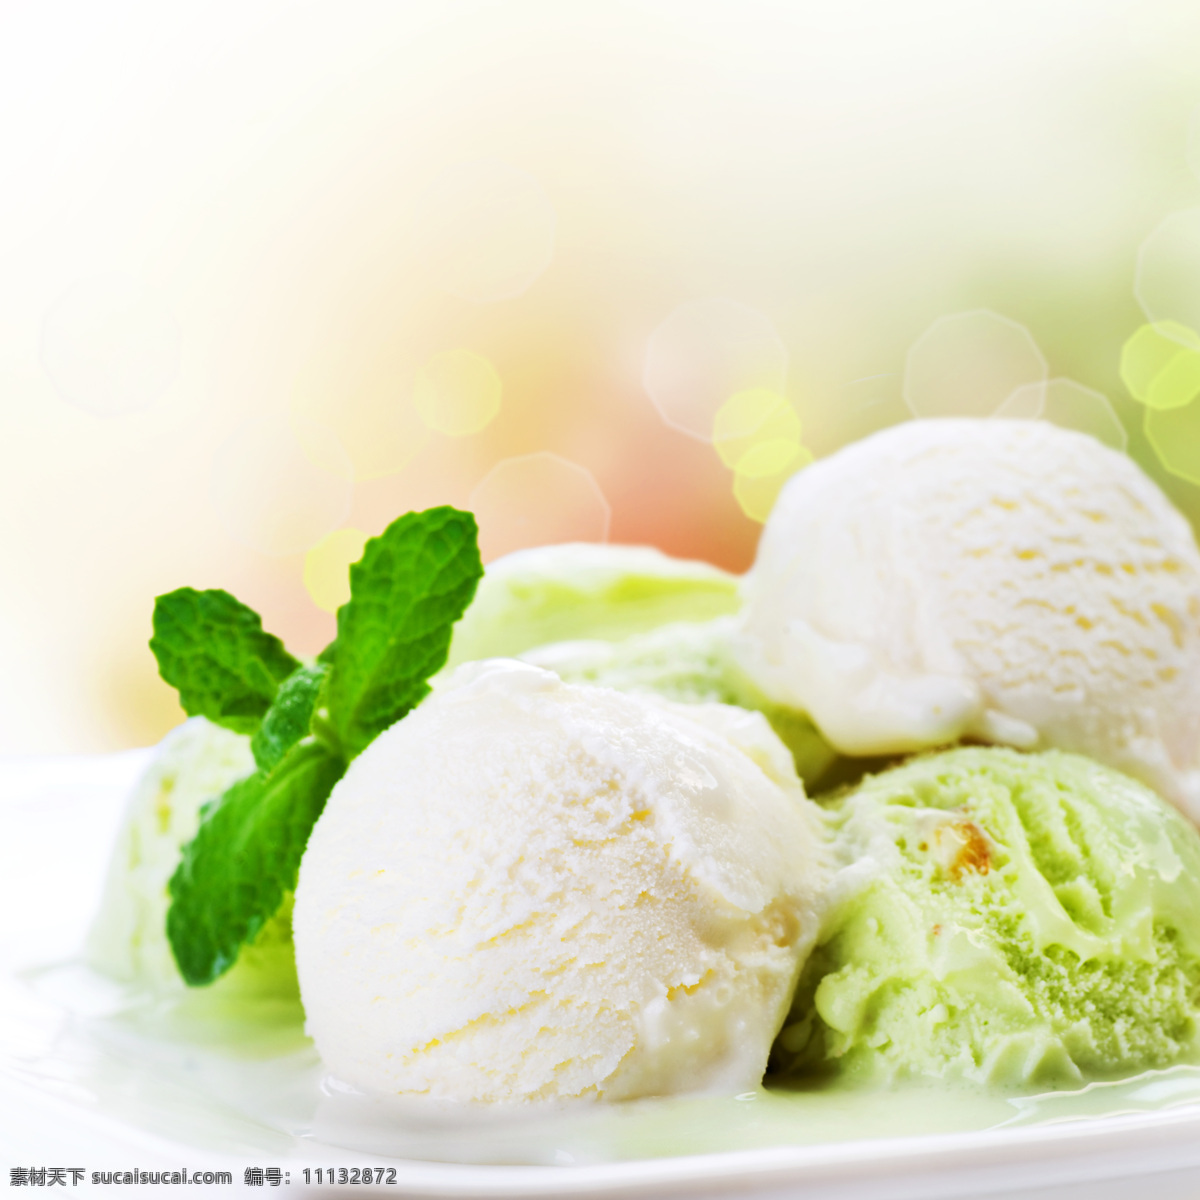 冰淇淋 法式雪糕 雪糕杯 冷饮 甜品 小吃 果淋 食品 冷品 港式甜品 甜品站 西式甜品 甜点 雪糕 雪糕球 食物 餐饮美食 餐饮食材图片